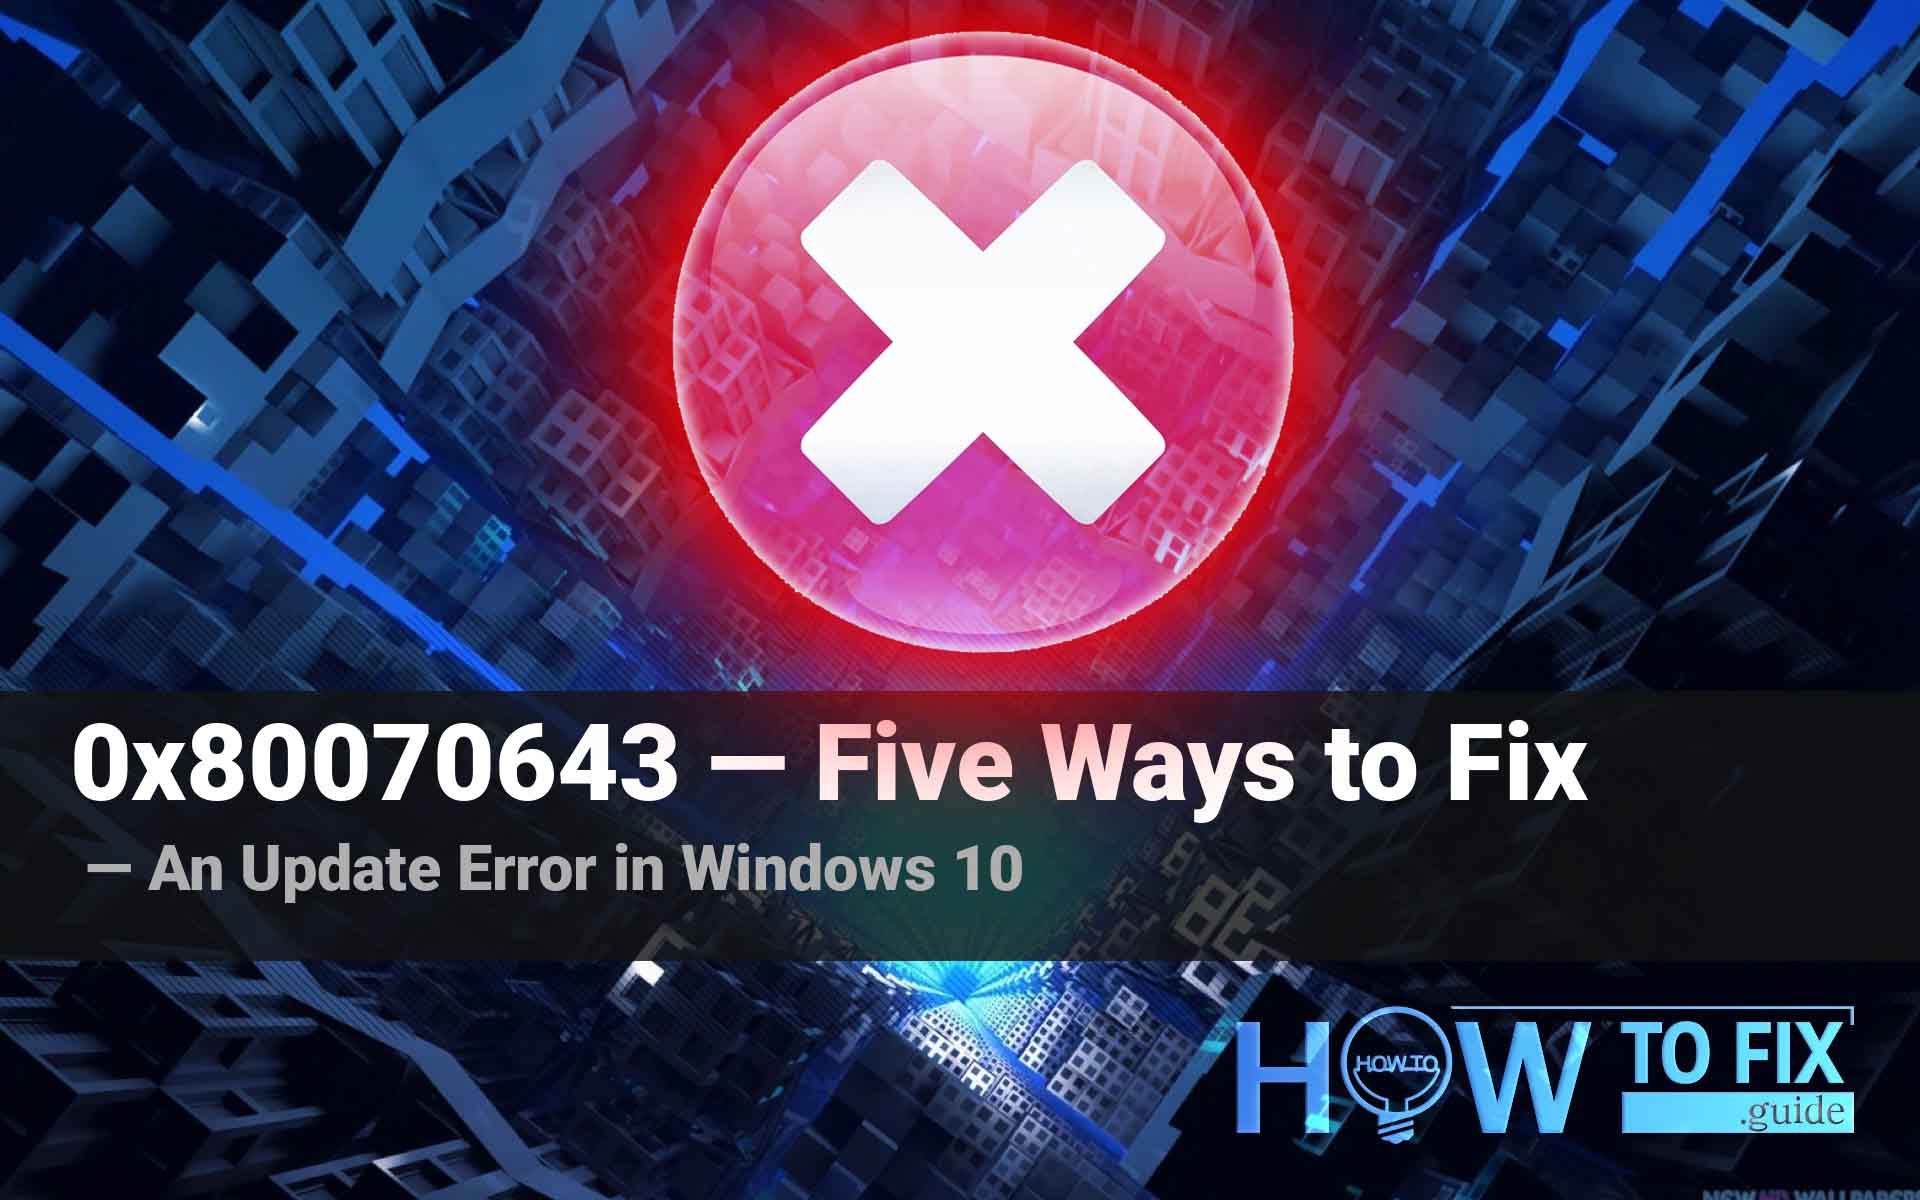 0x80070643 — an Update Error in Windows 10. Five Ways to Fix